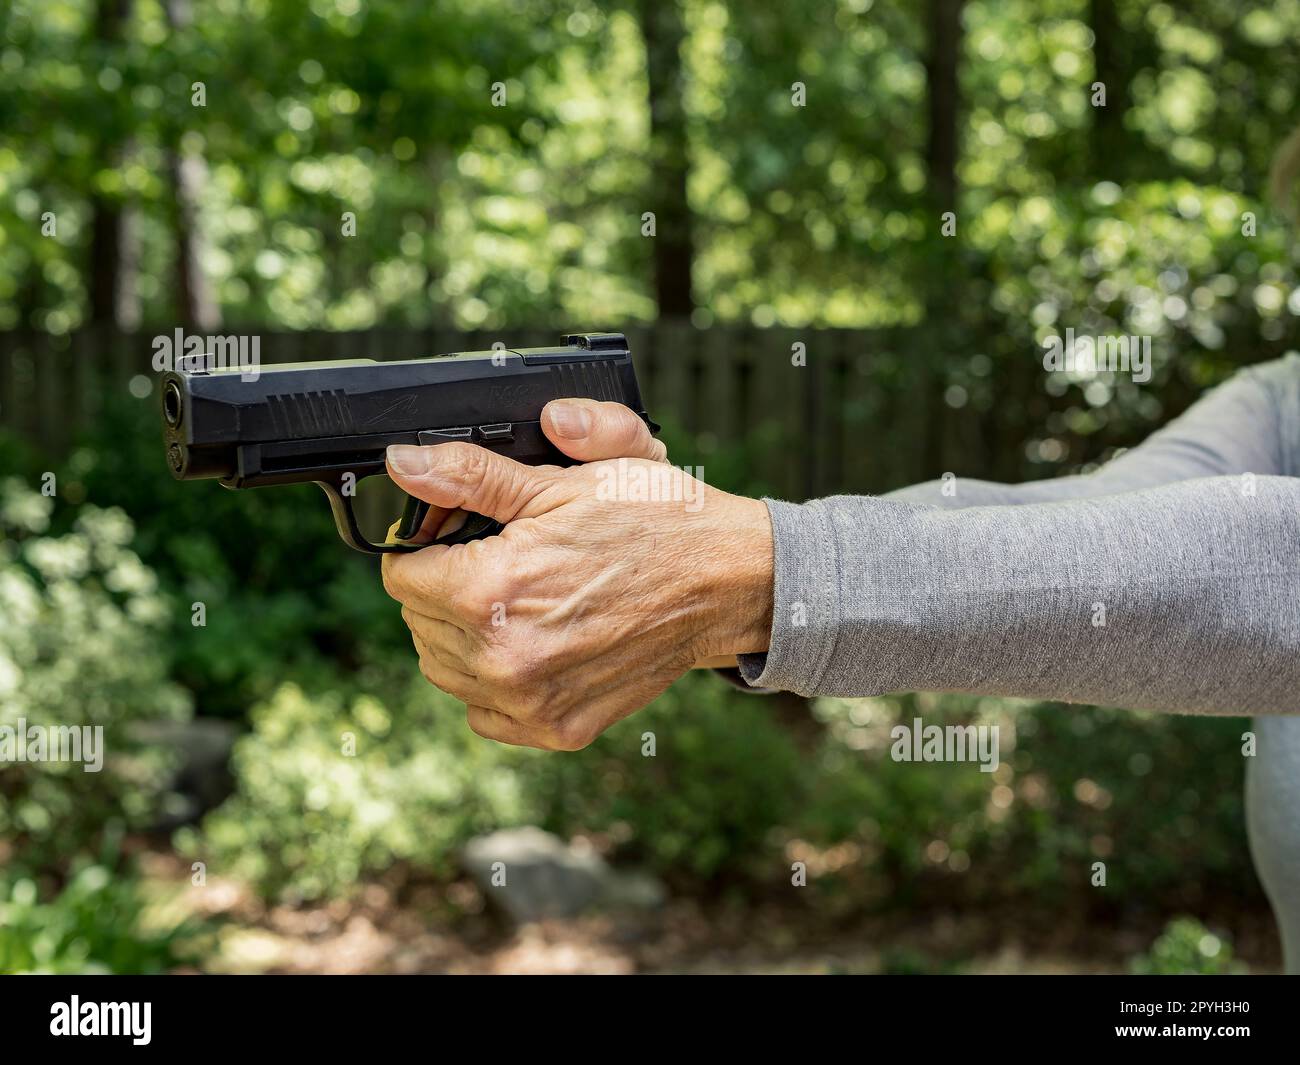 Femme tenant un pistolet SIG Sauer 9mm, ou pistolet, visant avec une poignée à deux mains exerçant son deuxième droit d'amendement aux États-Unis. Banque D'Images